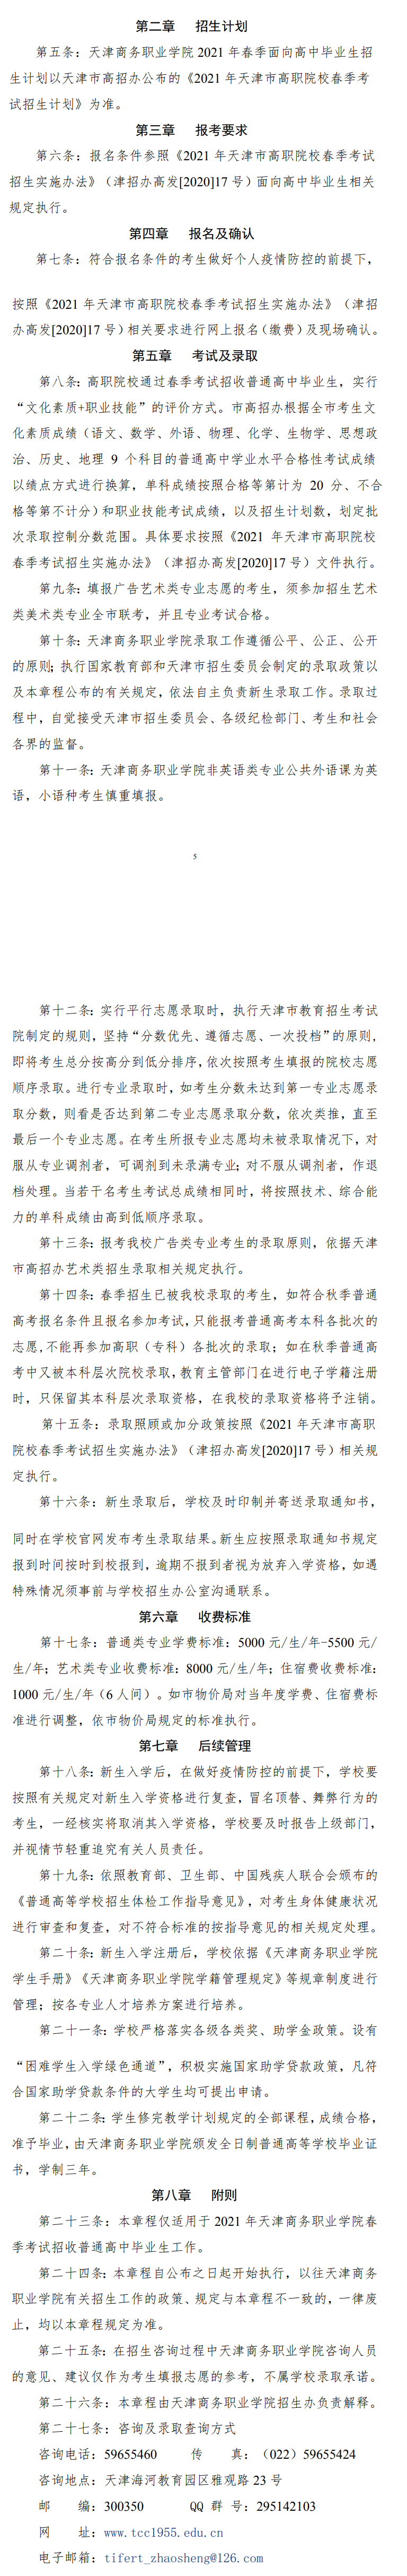 2021年天津商务职业学院春季考试招生章程